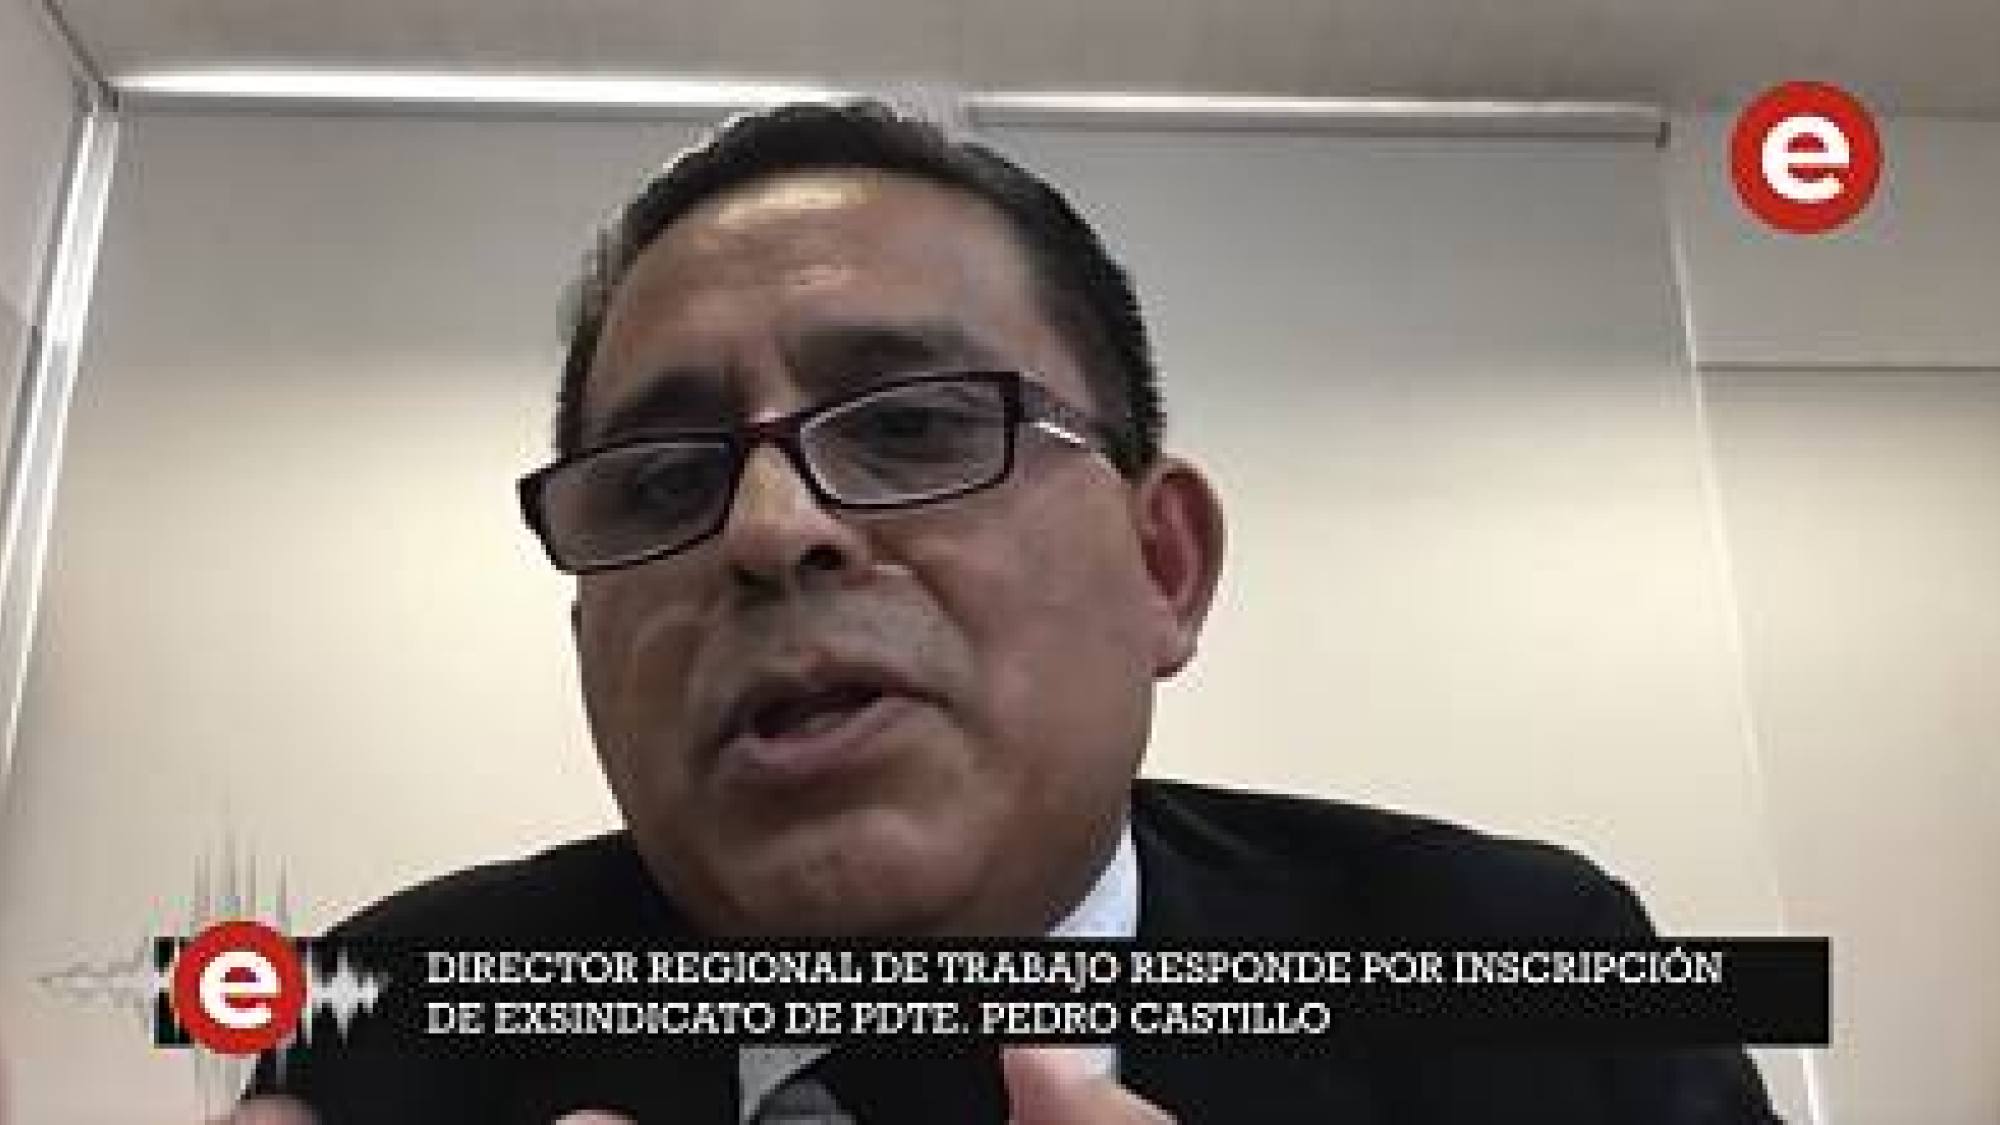 Director regional de Trabajo responde por inscripción de exsindicato de Pedro Castillo, Epicentro TV